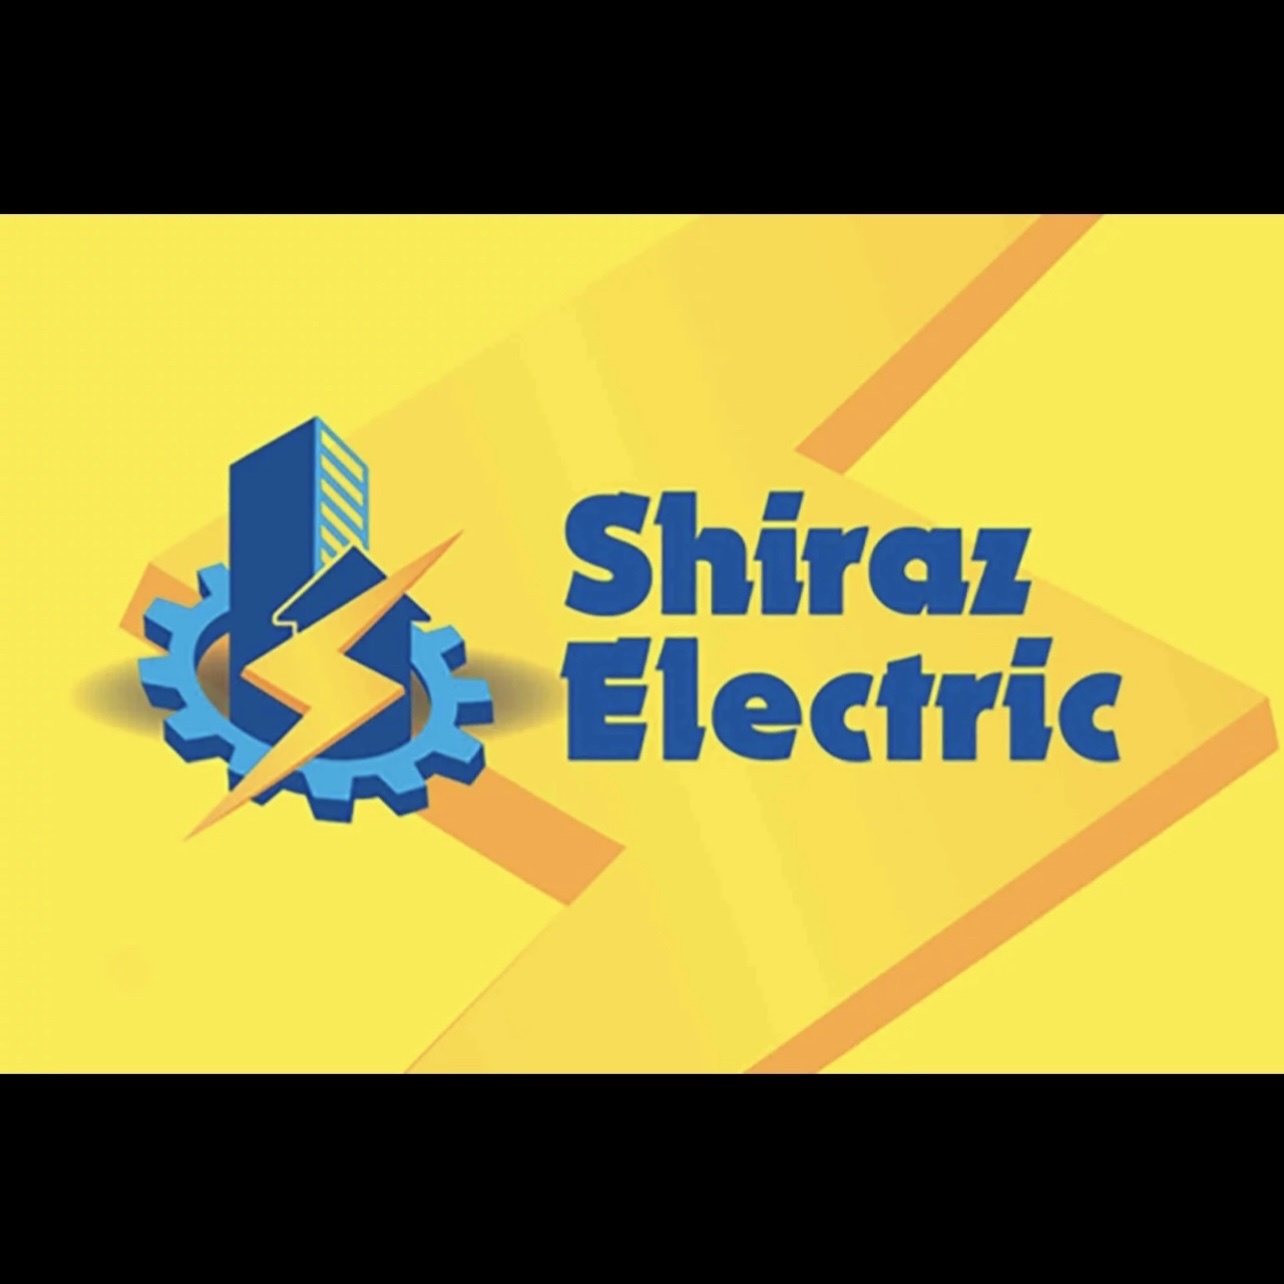 Shirazelectric's logo